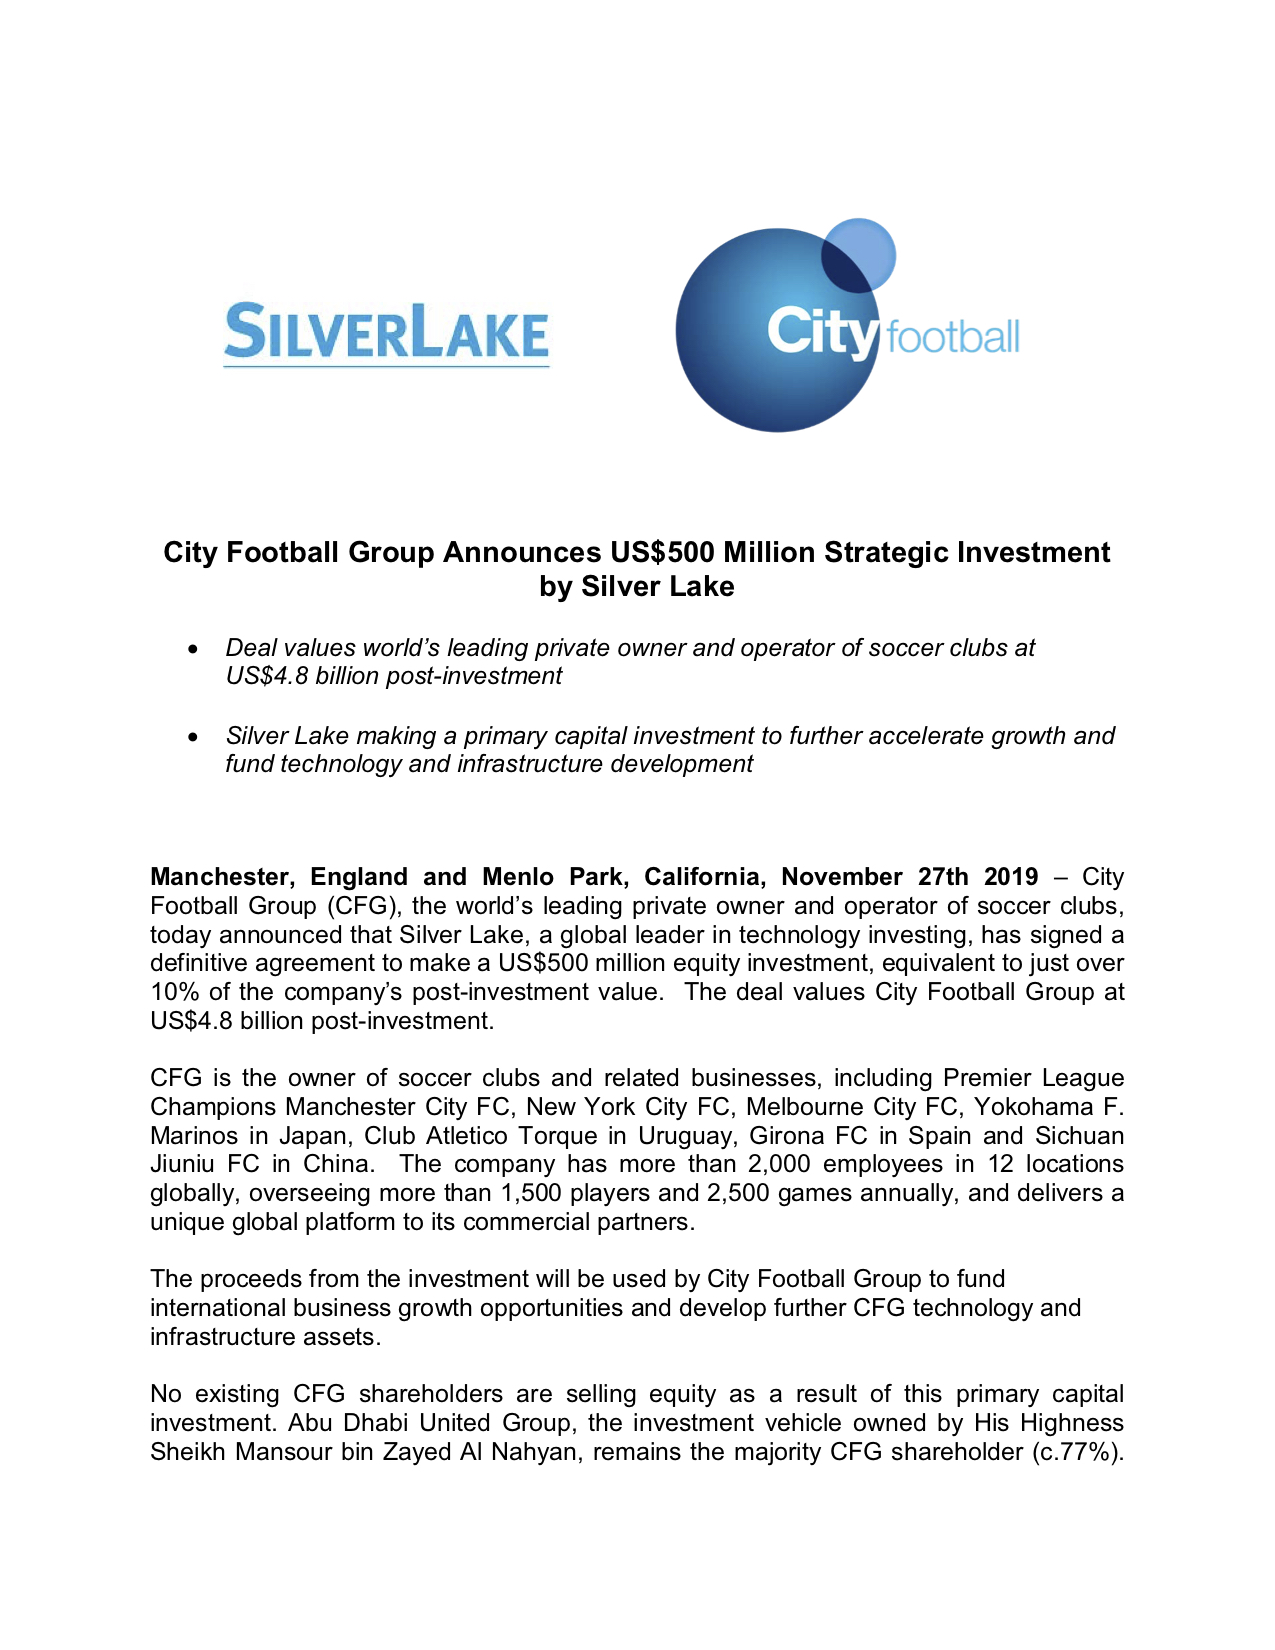 Le communiqué de Silver Lake suite au rapprochement du fond avec City Football Group